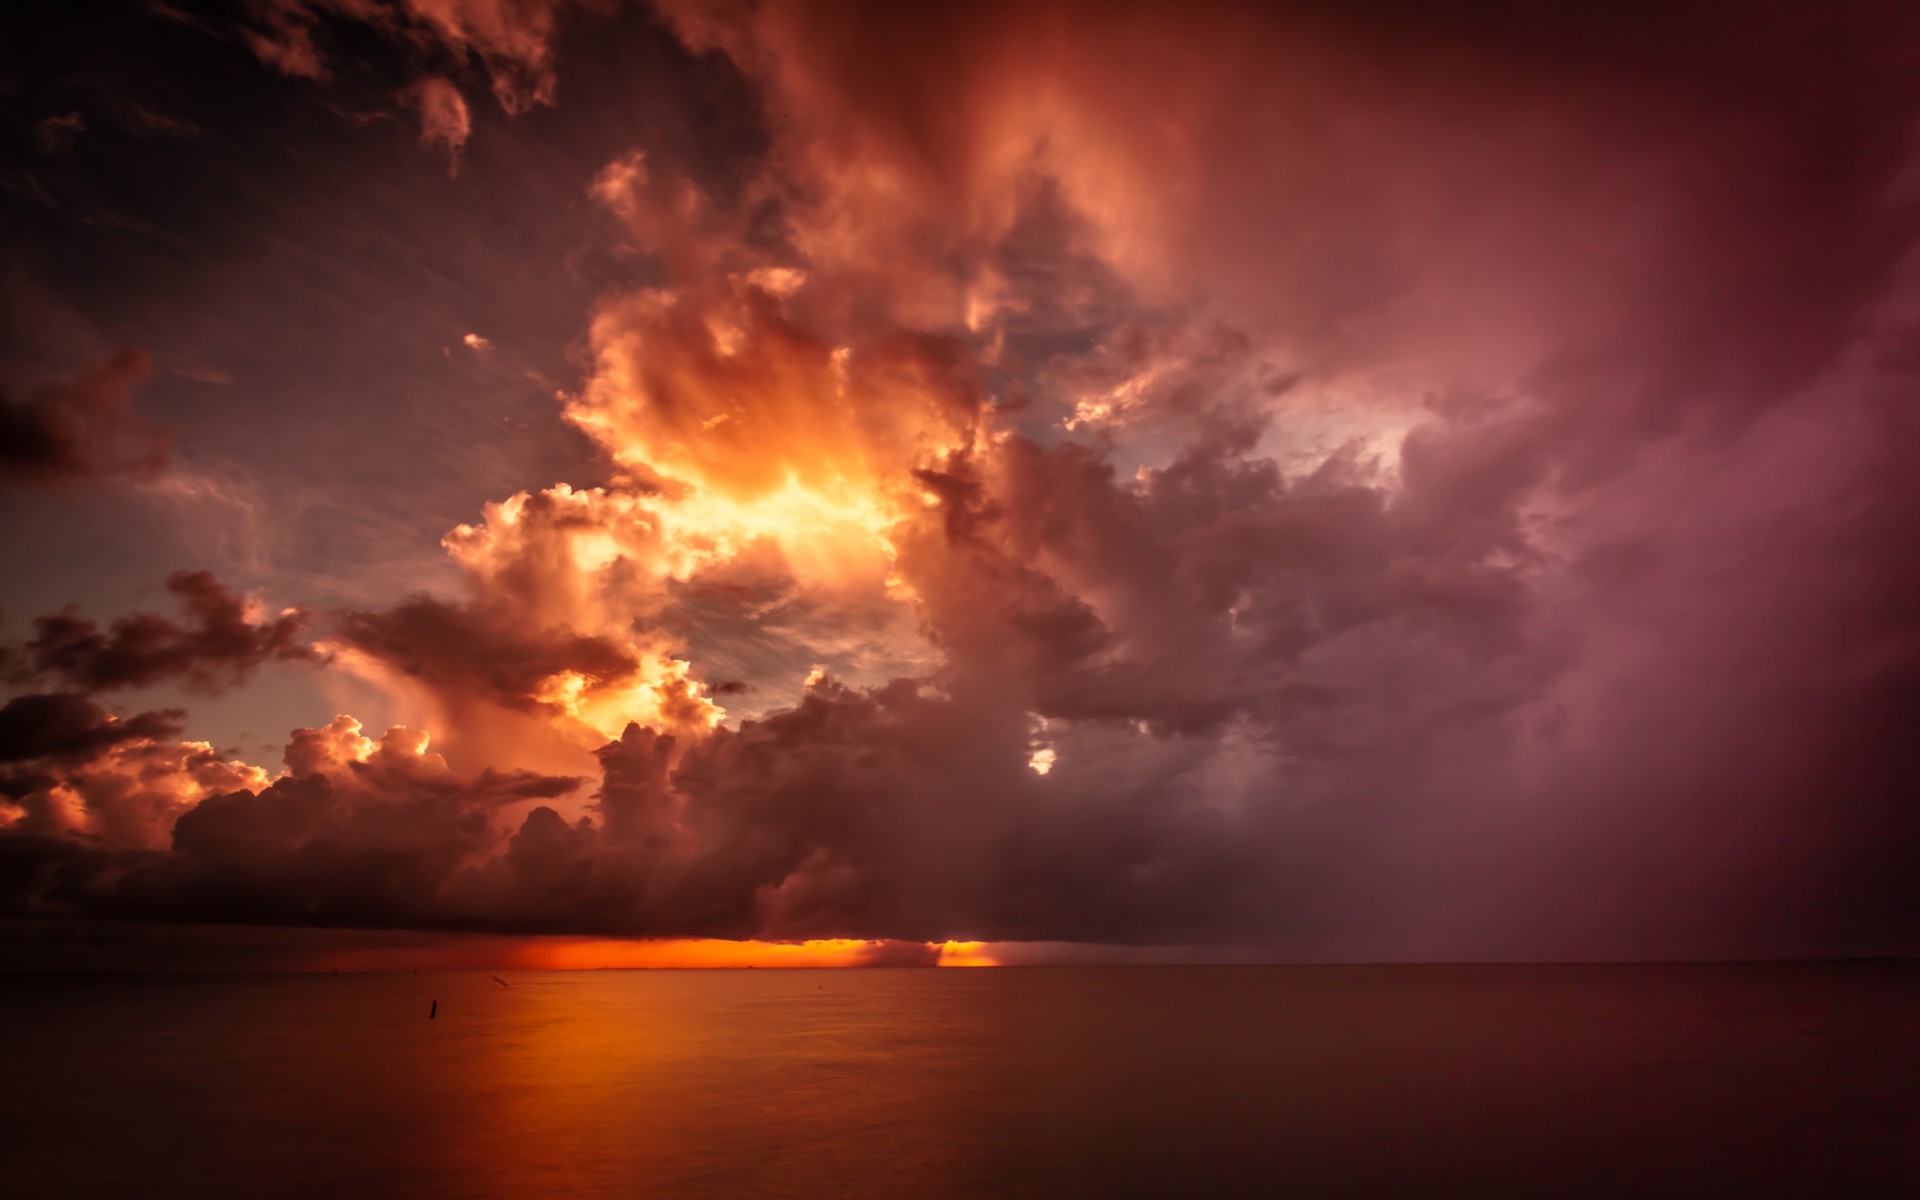 Скачать обои бесплатно Закат, Небо, Облака, Горизонт, Океан, Земля/природа, Оранжевый Цвет) картинка на рабочий стол ПК